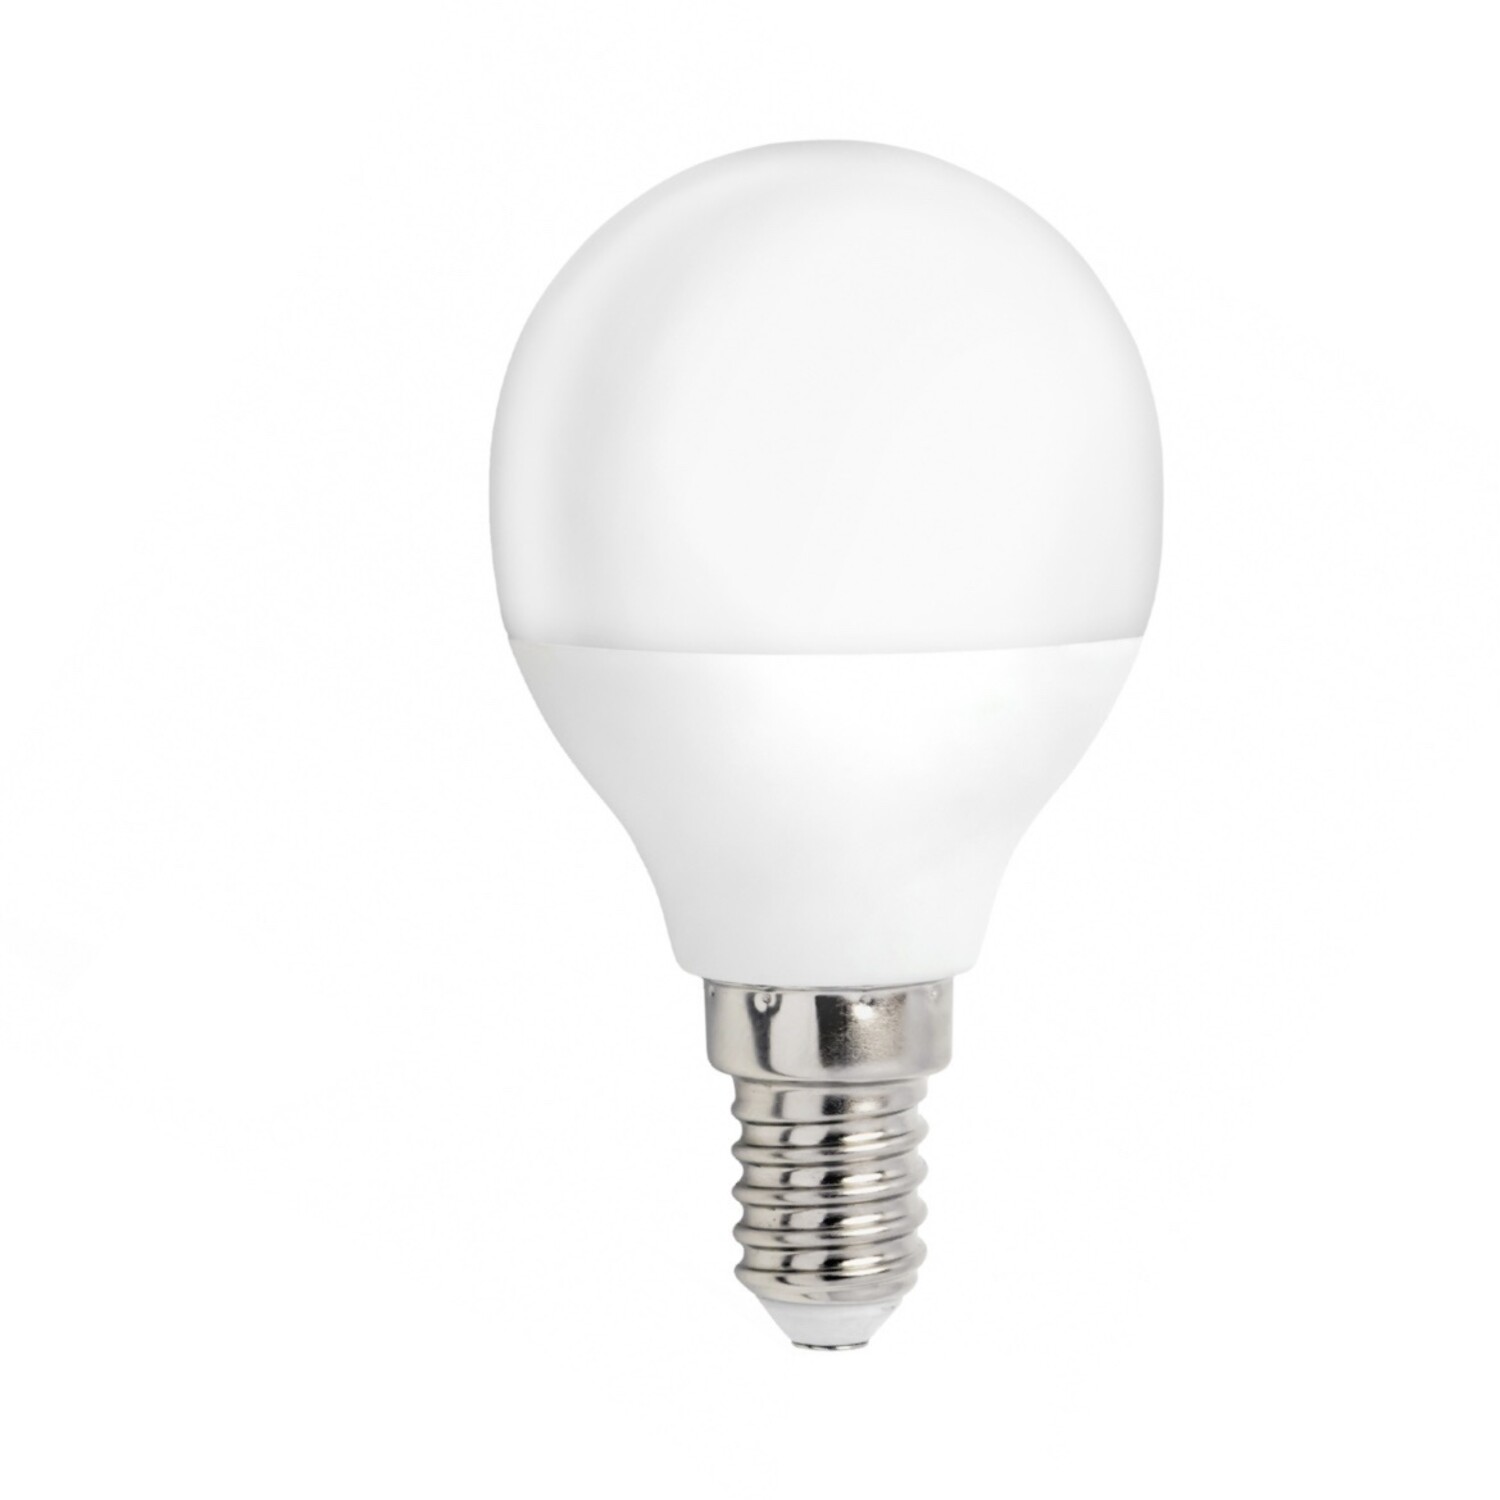 LED Lampe E14 3000K entspricht 4W 25W - Warmweiß